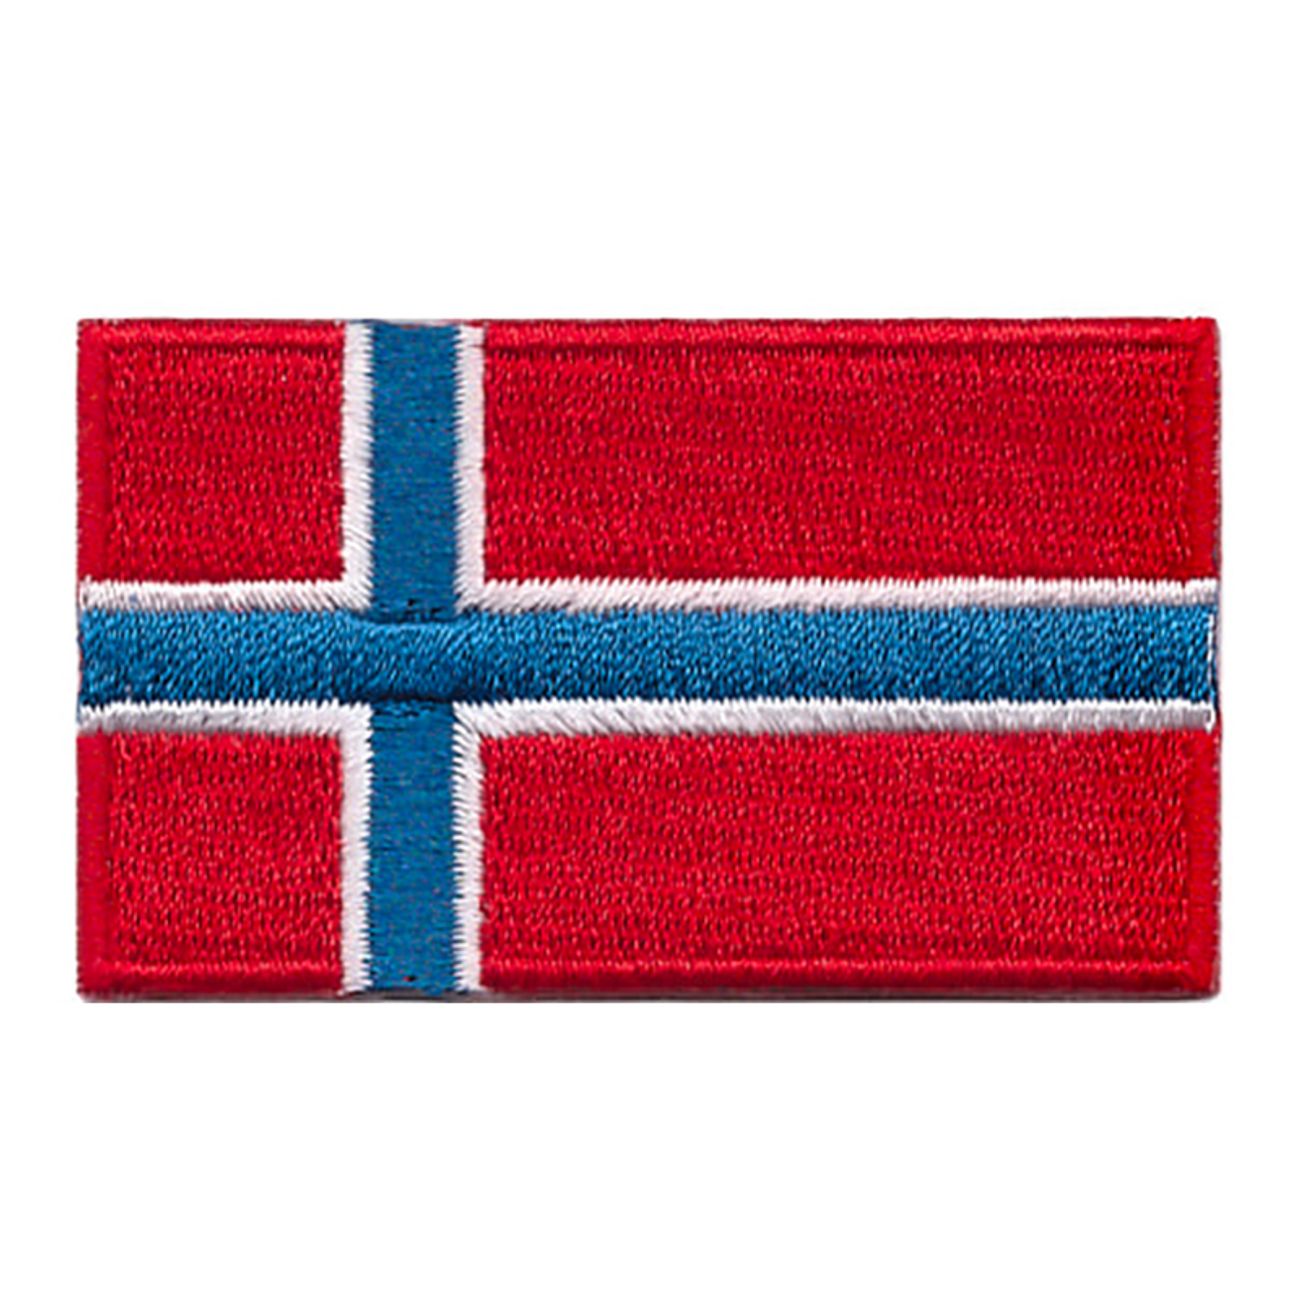 tygmarke-norska-flaggan-76834-1